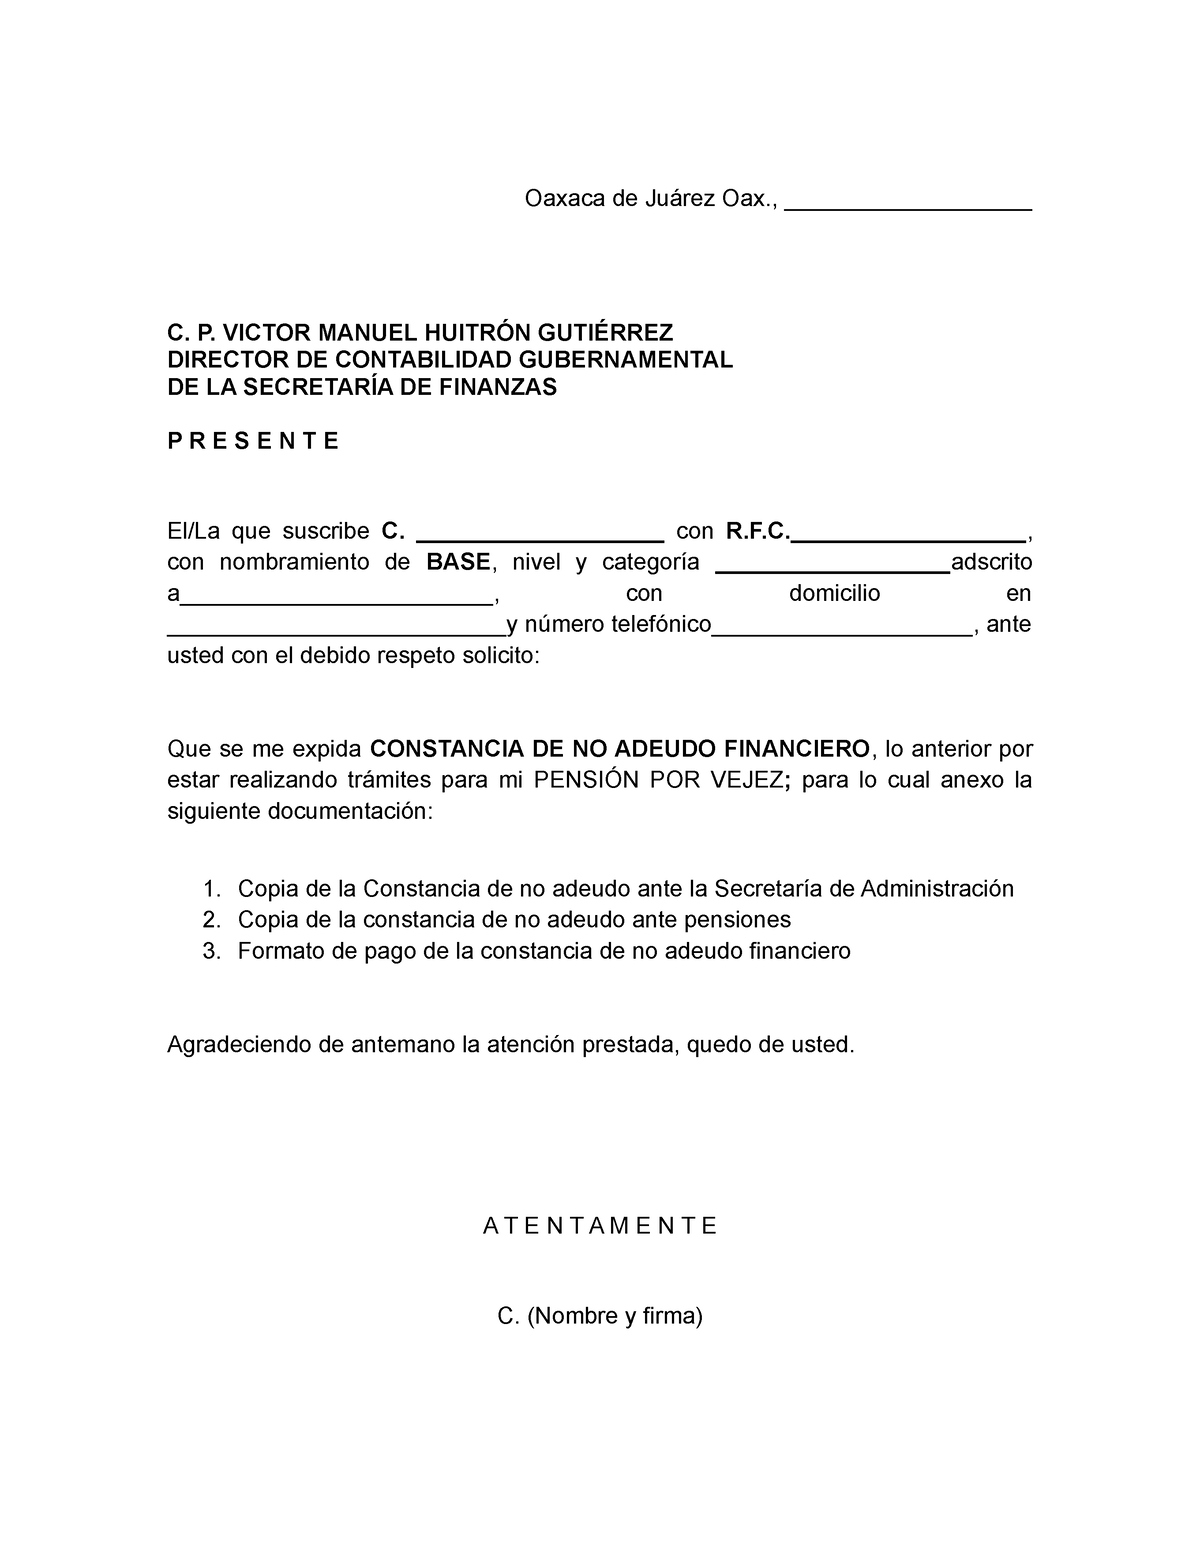 Constancia De No Adeudo Financiero Image To U 6741